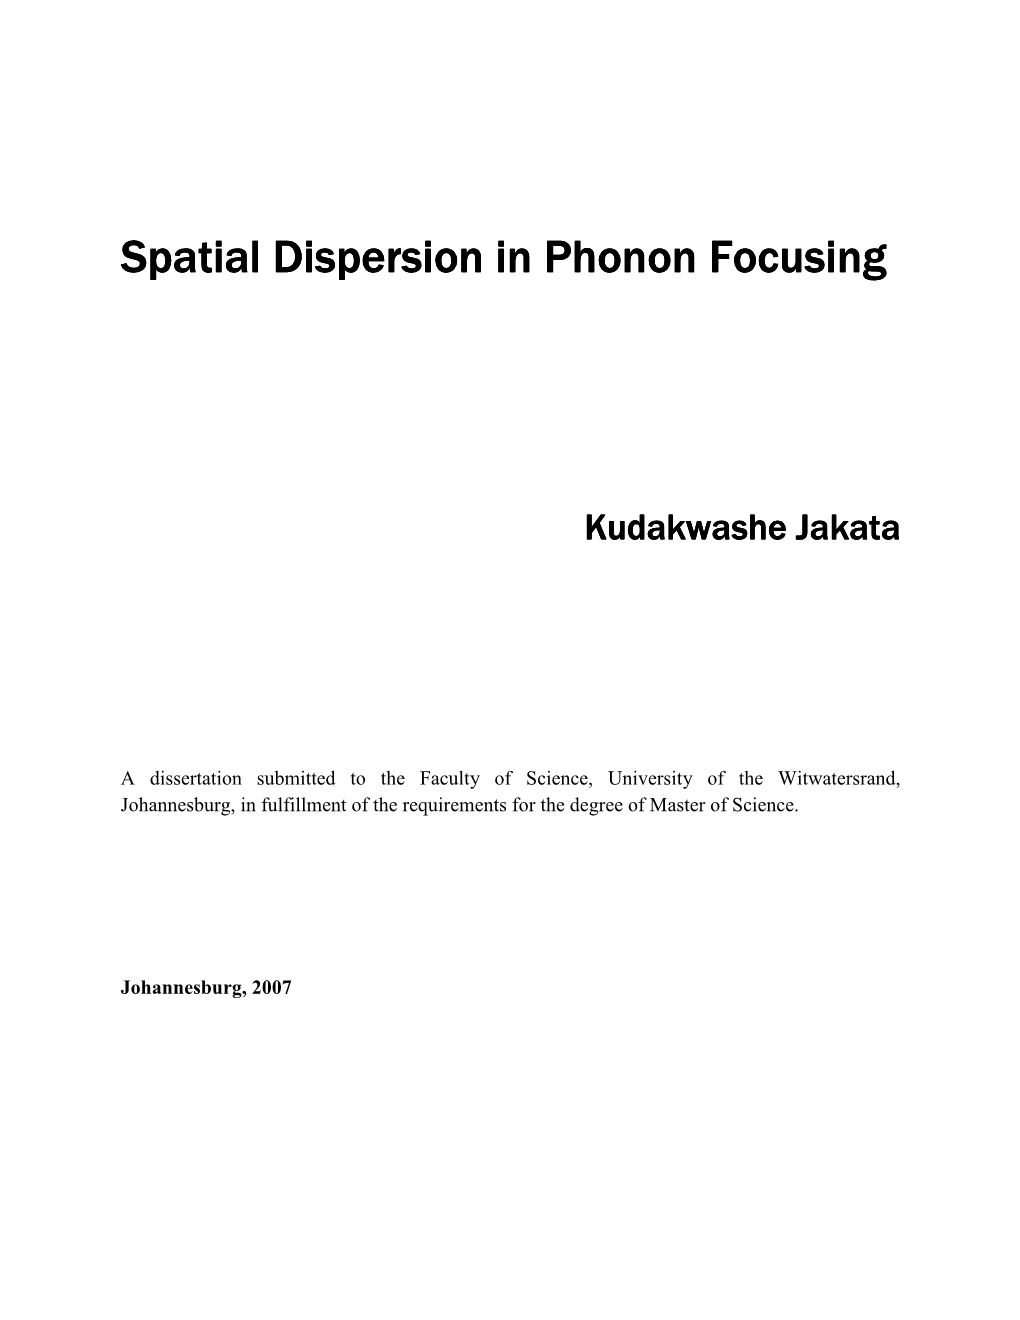 Spatial Dispersion in Phonon Focusing Spatial